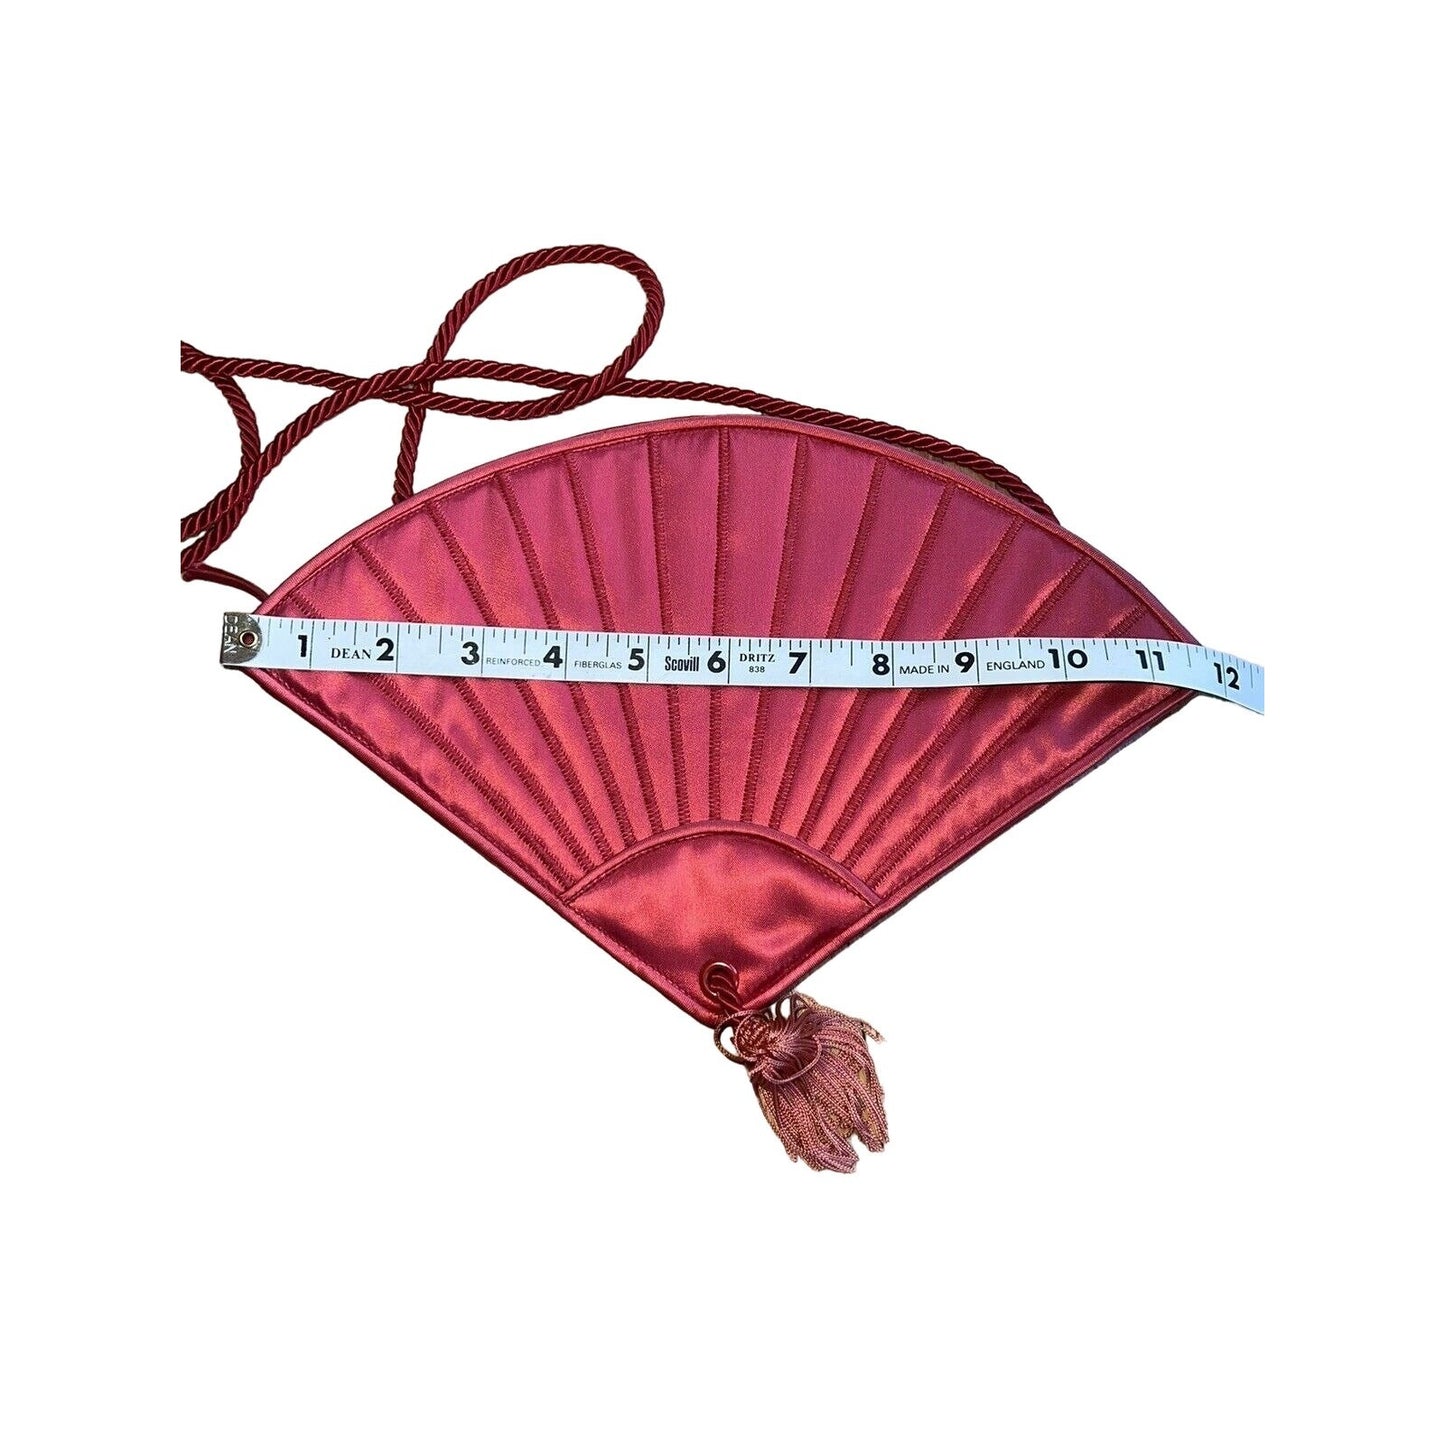 SOLD- Fendi SAS scarlet red fan shaped two-way purse